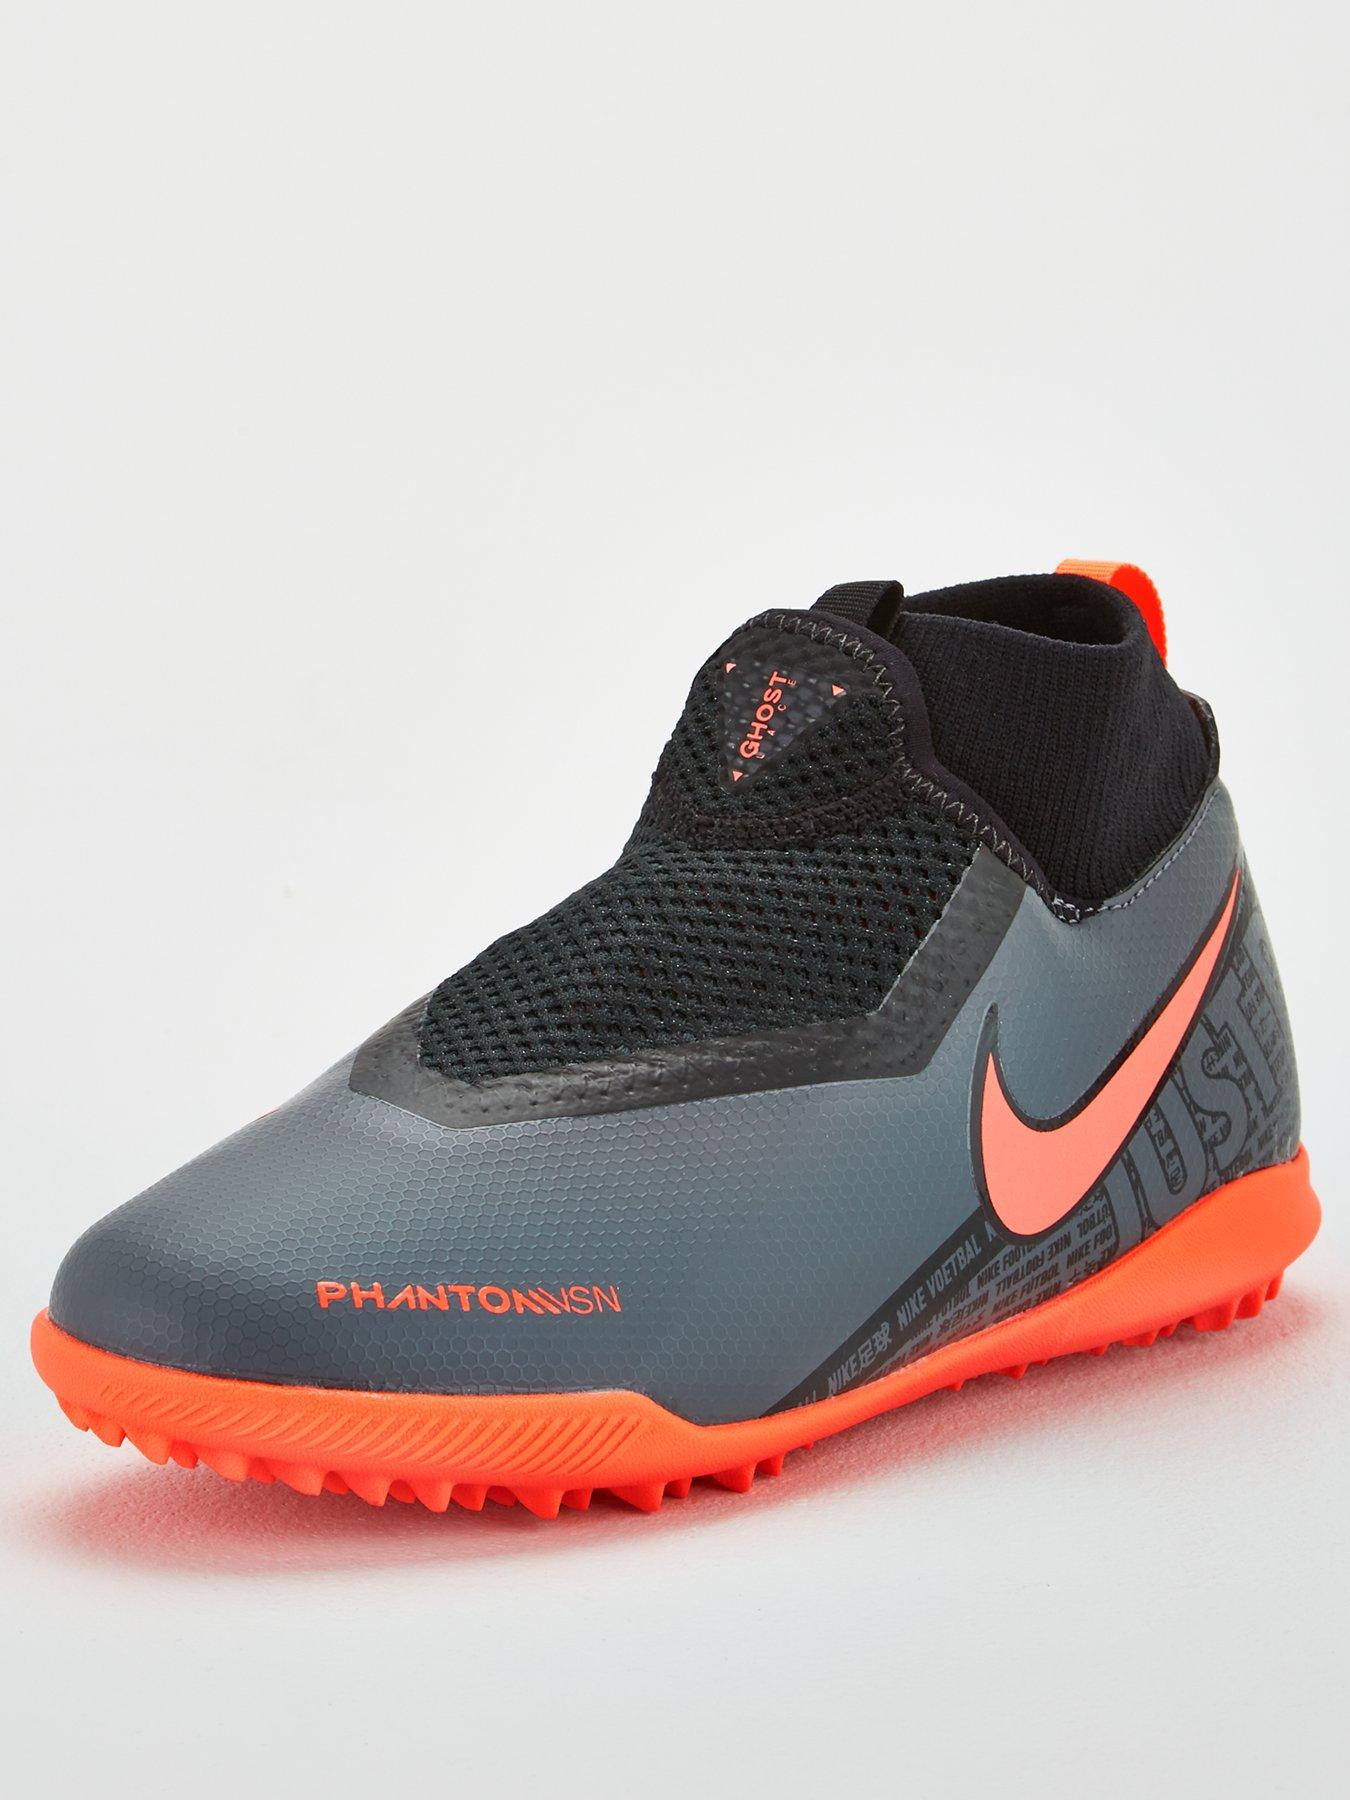 Nike Phantom Vision Elite Df Ag Pro Rising Fire UK 9.5 .